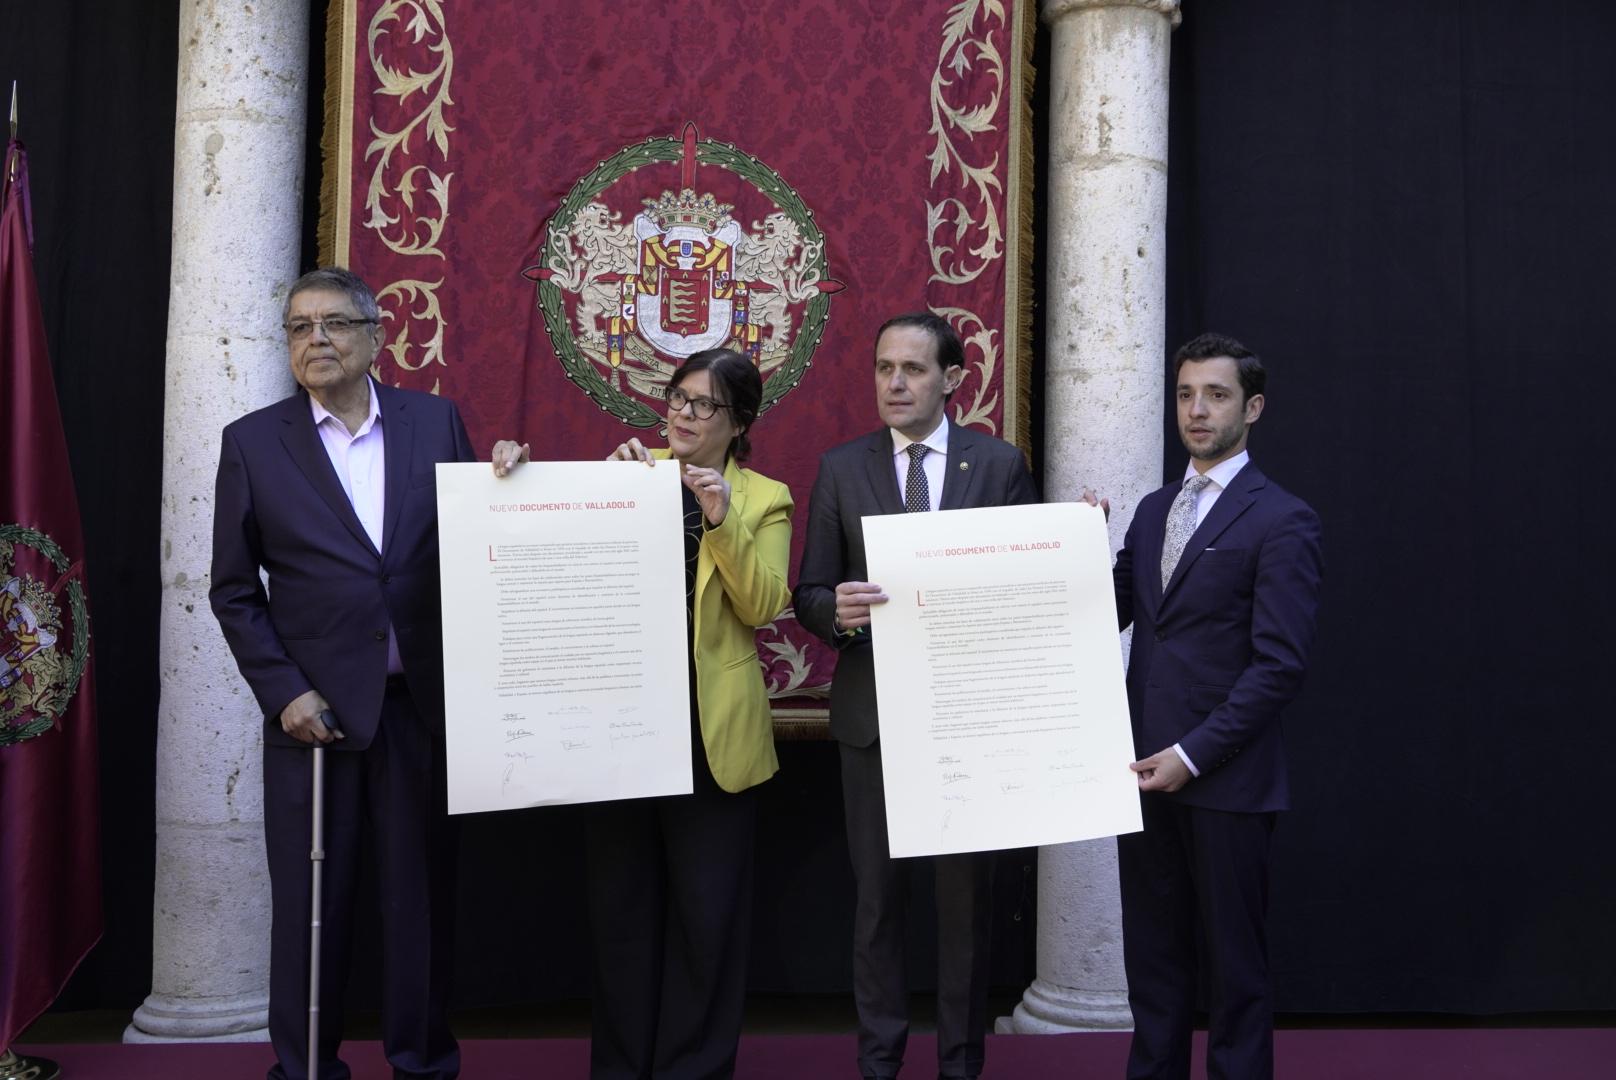 El Nuevo Documento de Valladolid firmado por todos los Premios Cervantes "convoca al mundo hispano" en la defensa del español